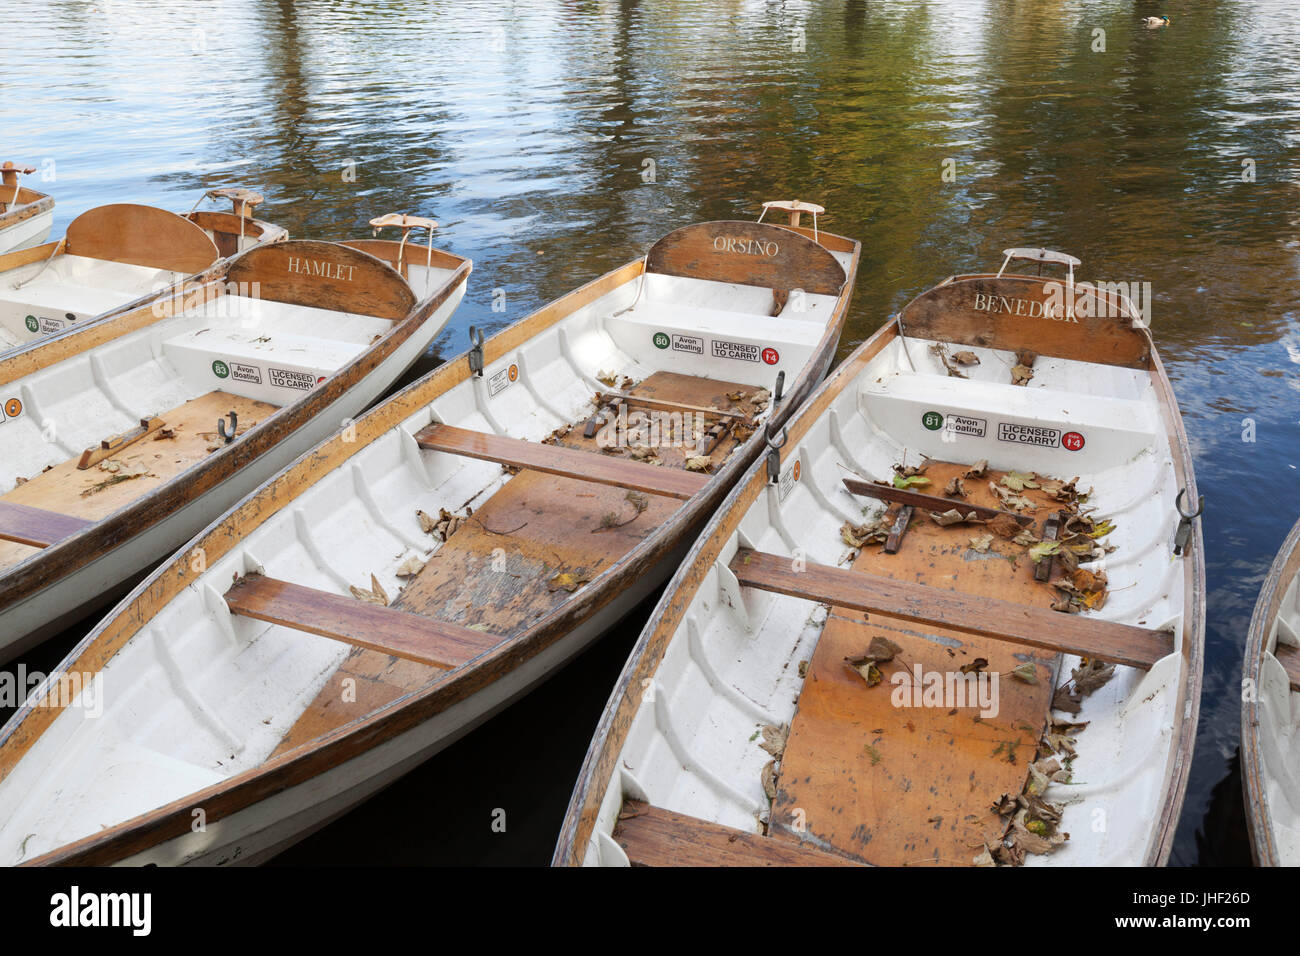 Barques sur la rivière Avon avec des noms de personnages de Shakespeare, Stratford-upon-Avon, Warwickshire, Angleterre, Royaume-Uni, Europe Banque D'Images